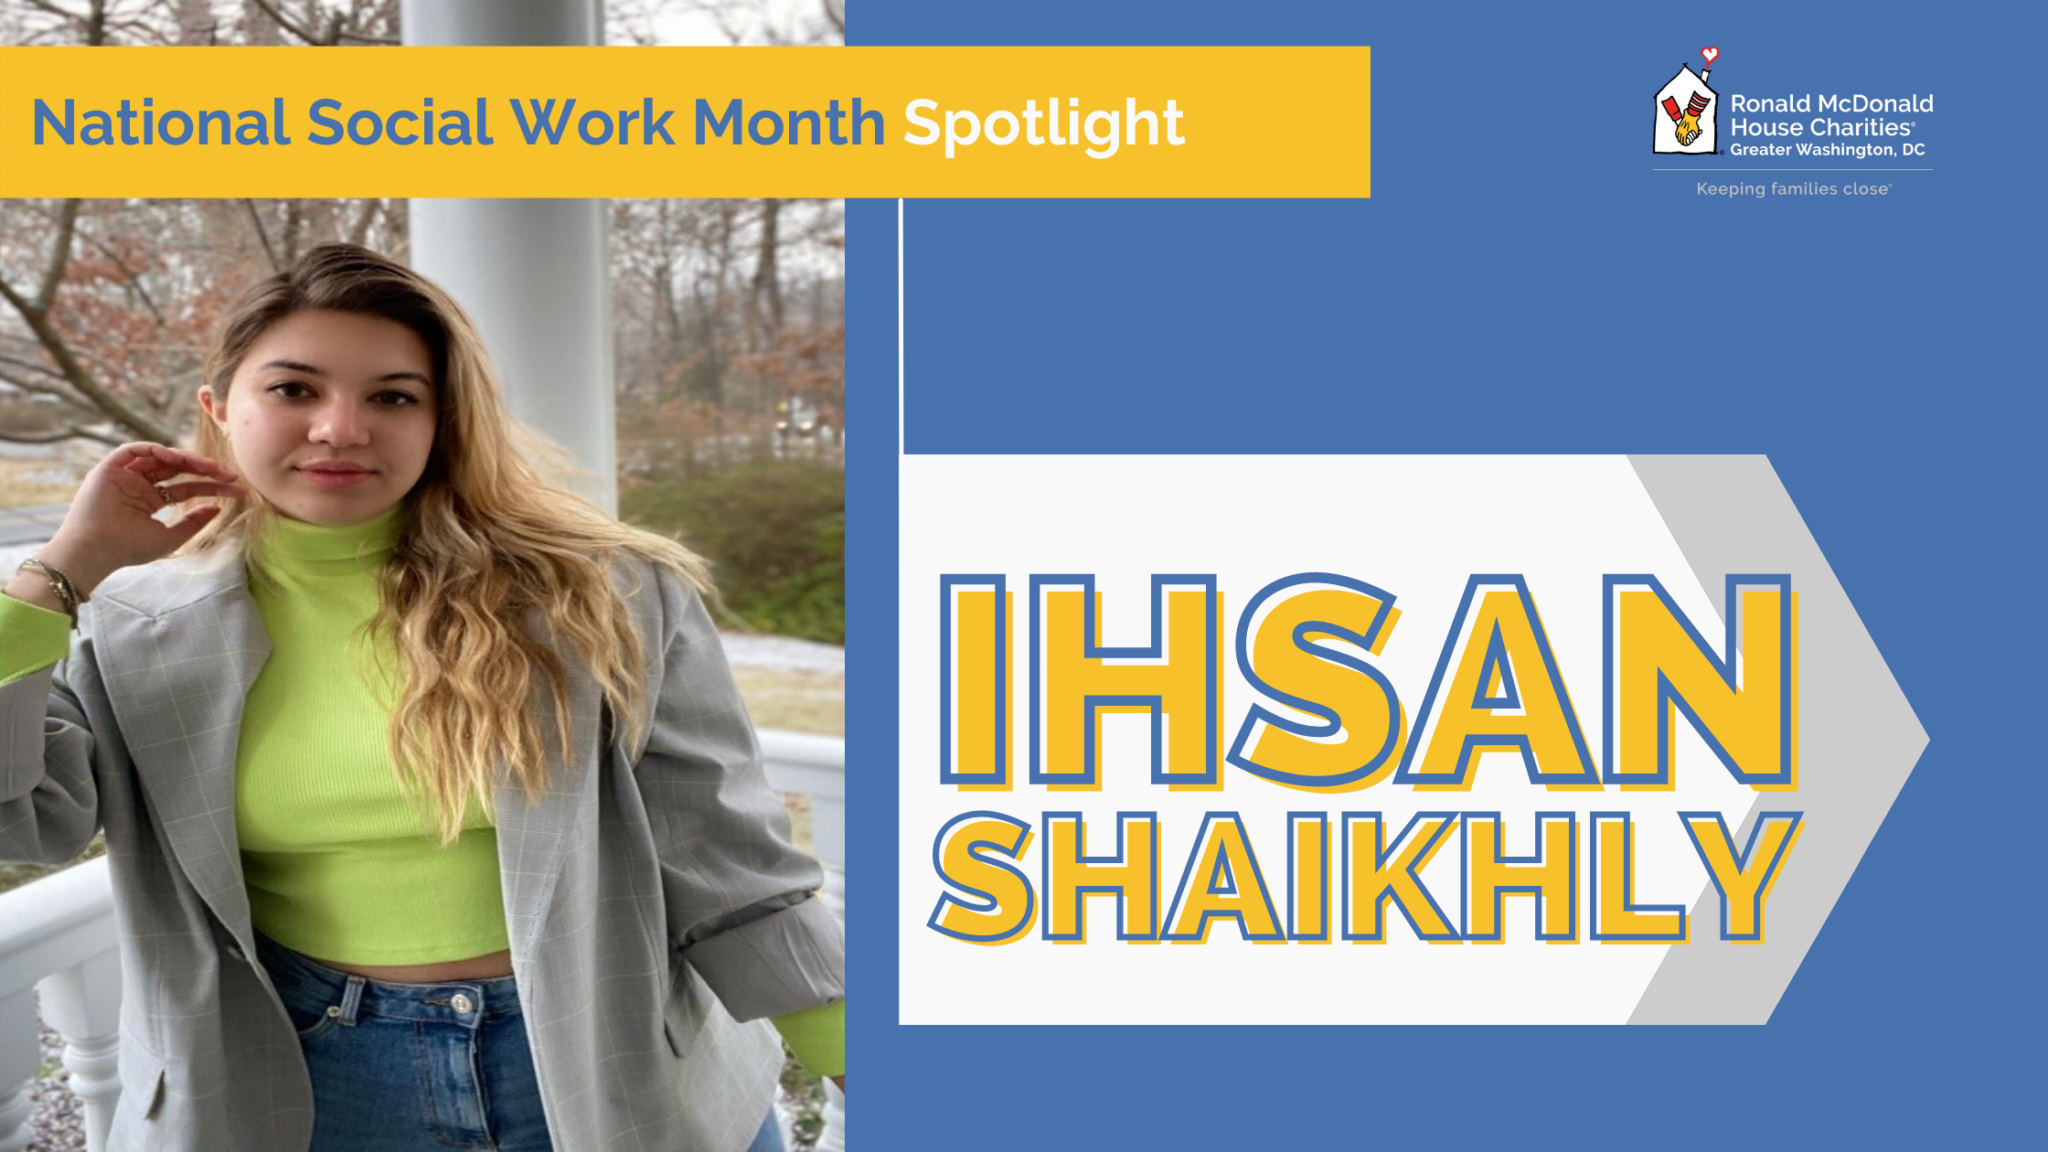 National Social Work Month Spotlight Ihsan Shaikhly